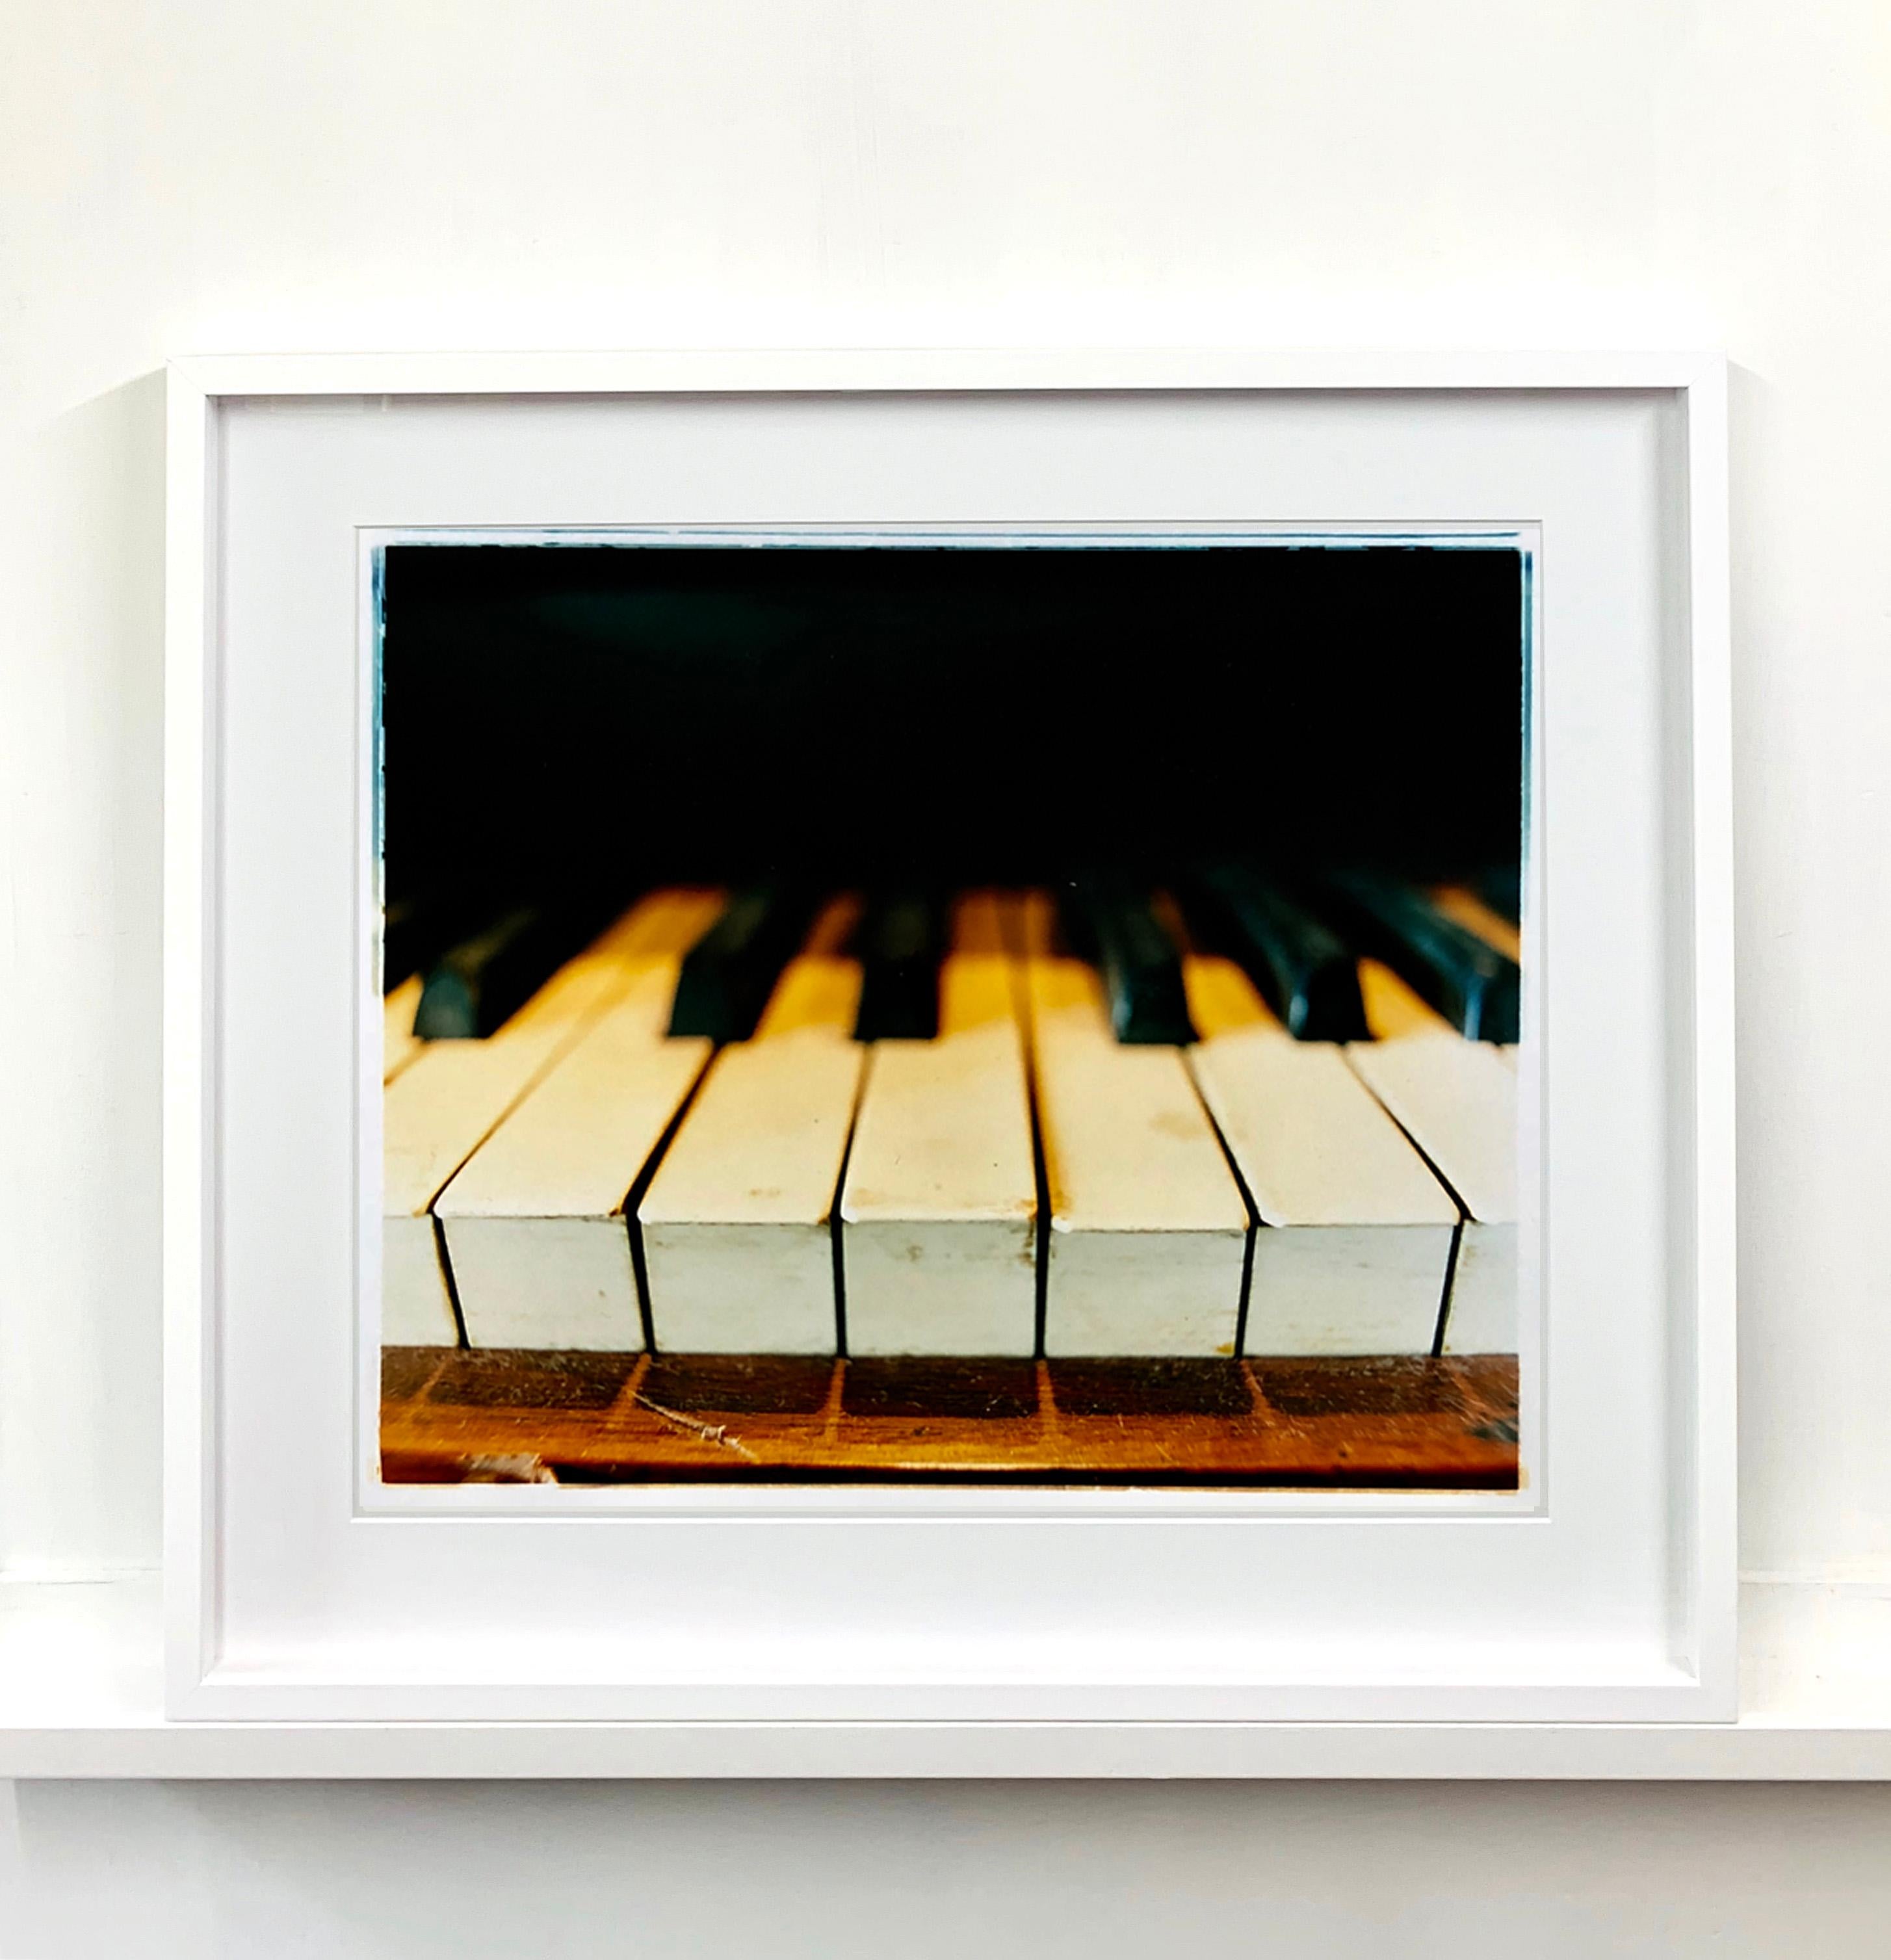 Dieses stimmungsvolle Bild wurde bei der Dokumentation des Preston Hall Museums aufgenommen und fängt das Klavier in allen Einzelheiten ein.

Dieses Kunstwerk ist eine auf 25 Exemplare limitierte Auflage eines fotografischen Glanzdrucks. Begleitet